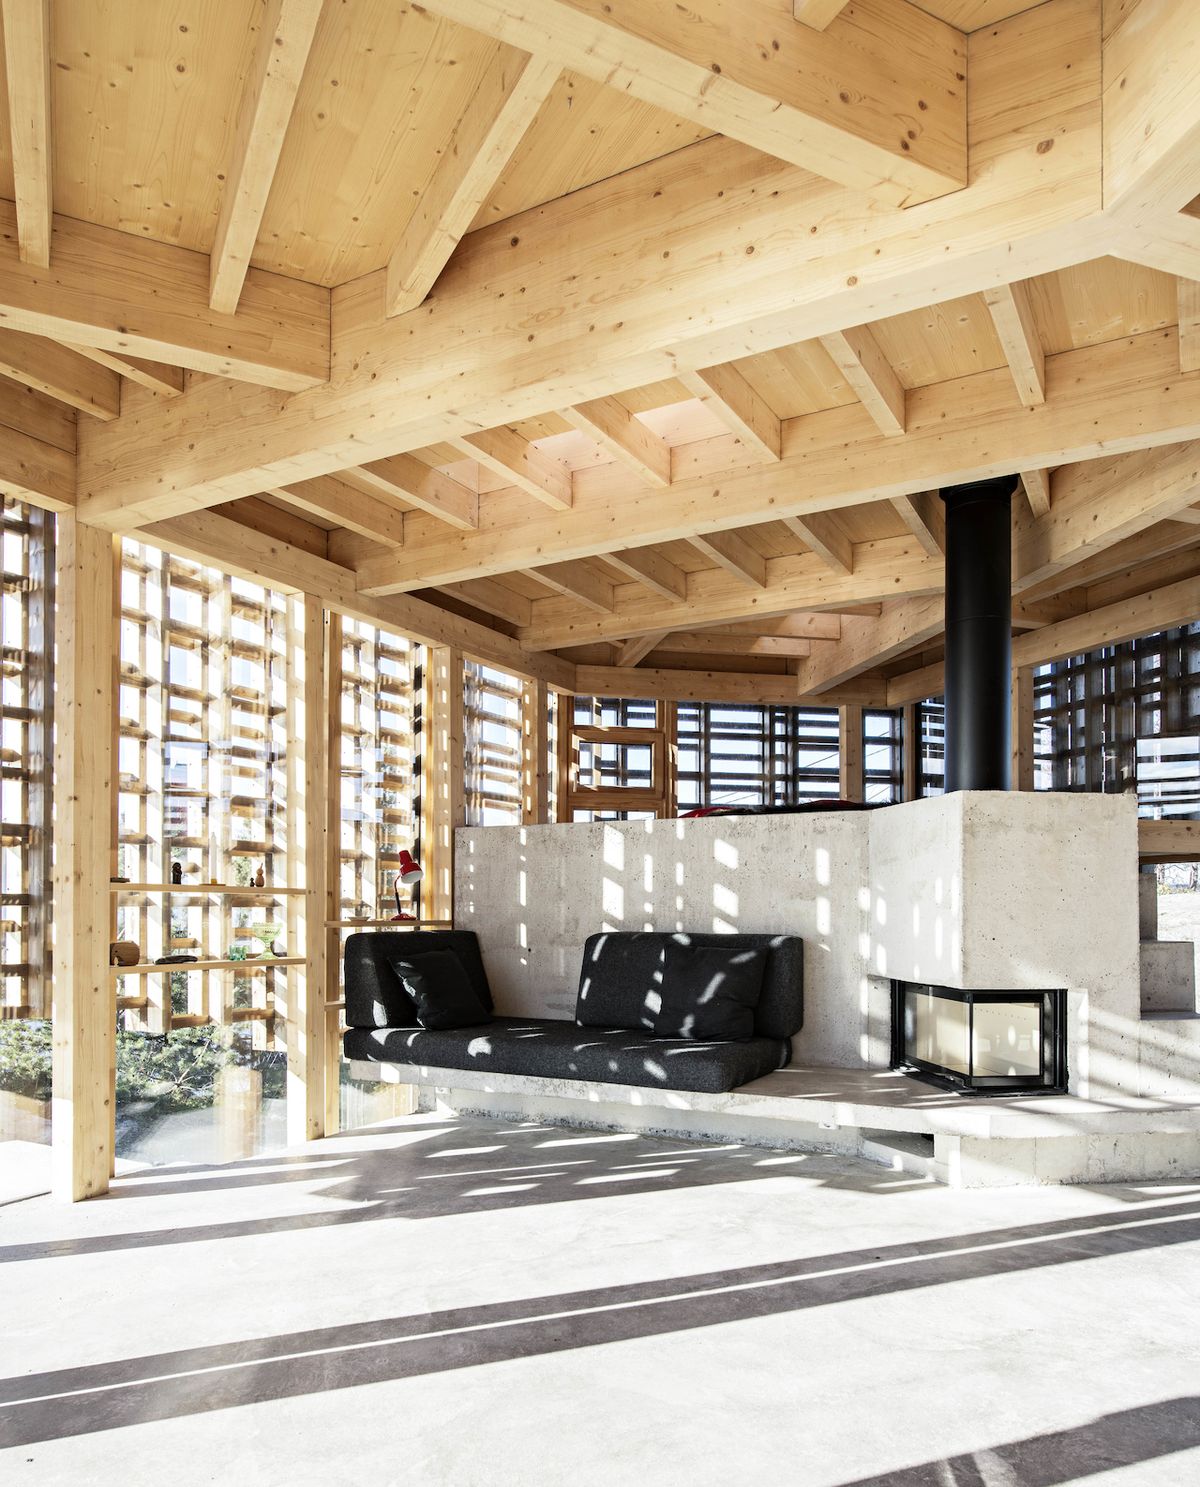 V domě se potkává trojice materiálů - beton, dřevo a sklo.